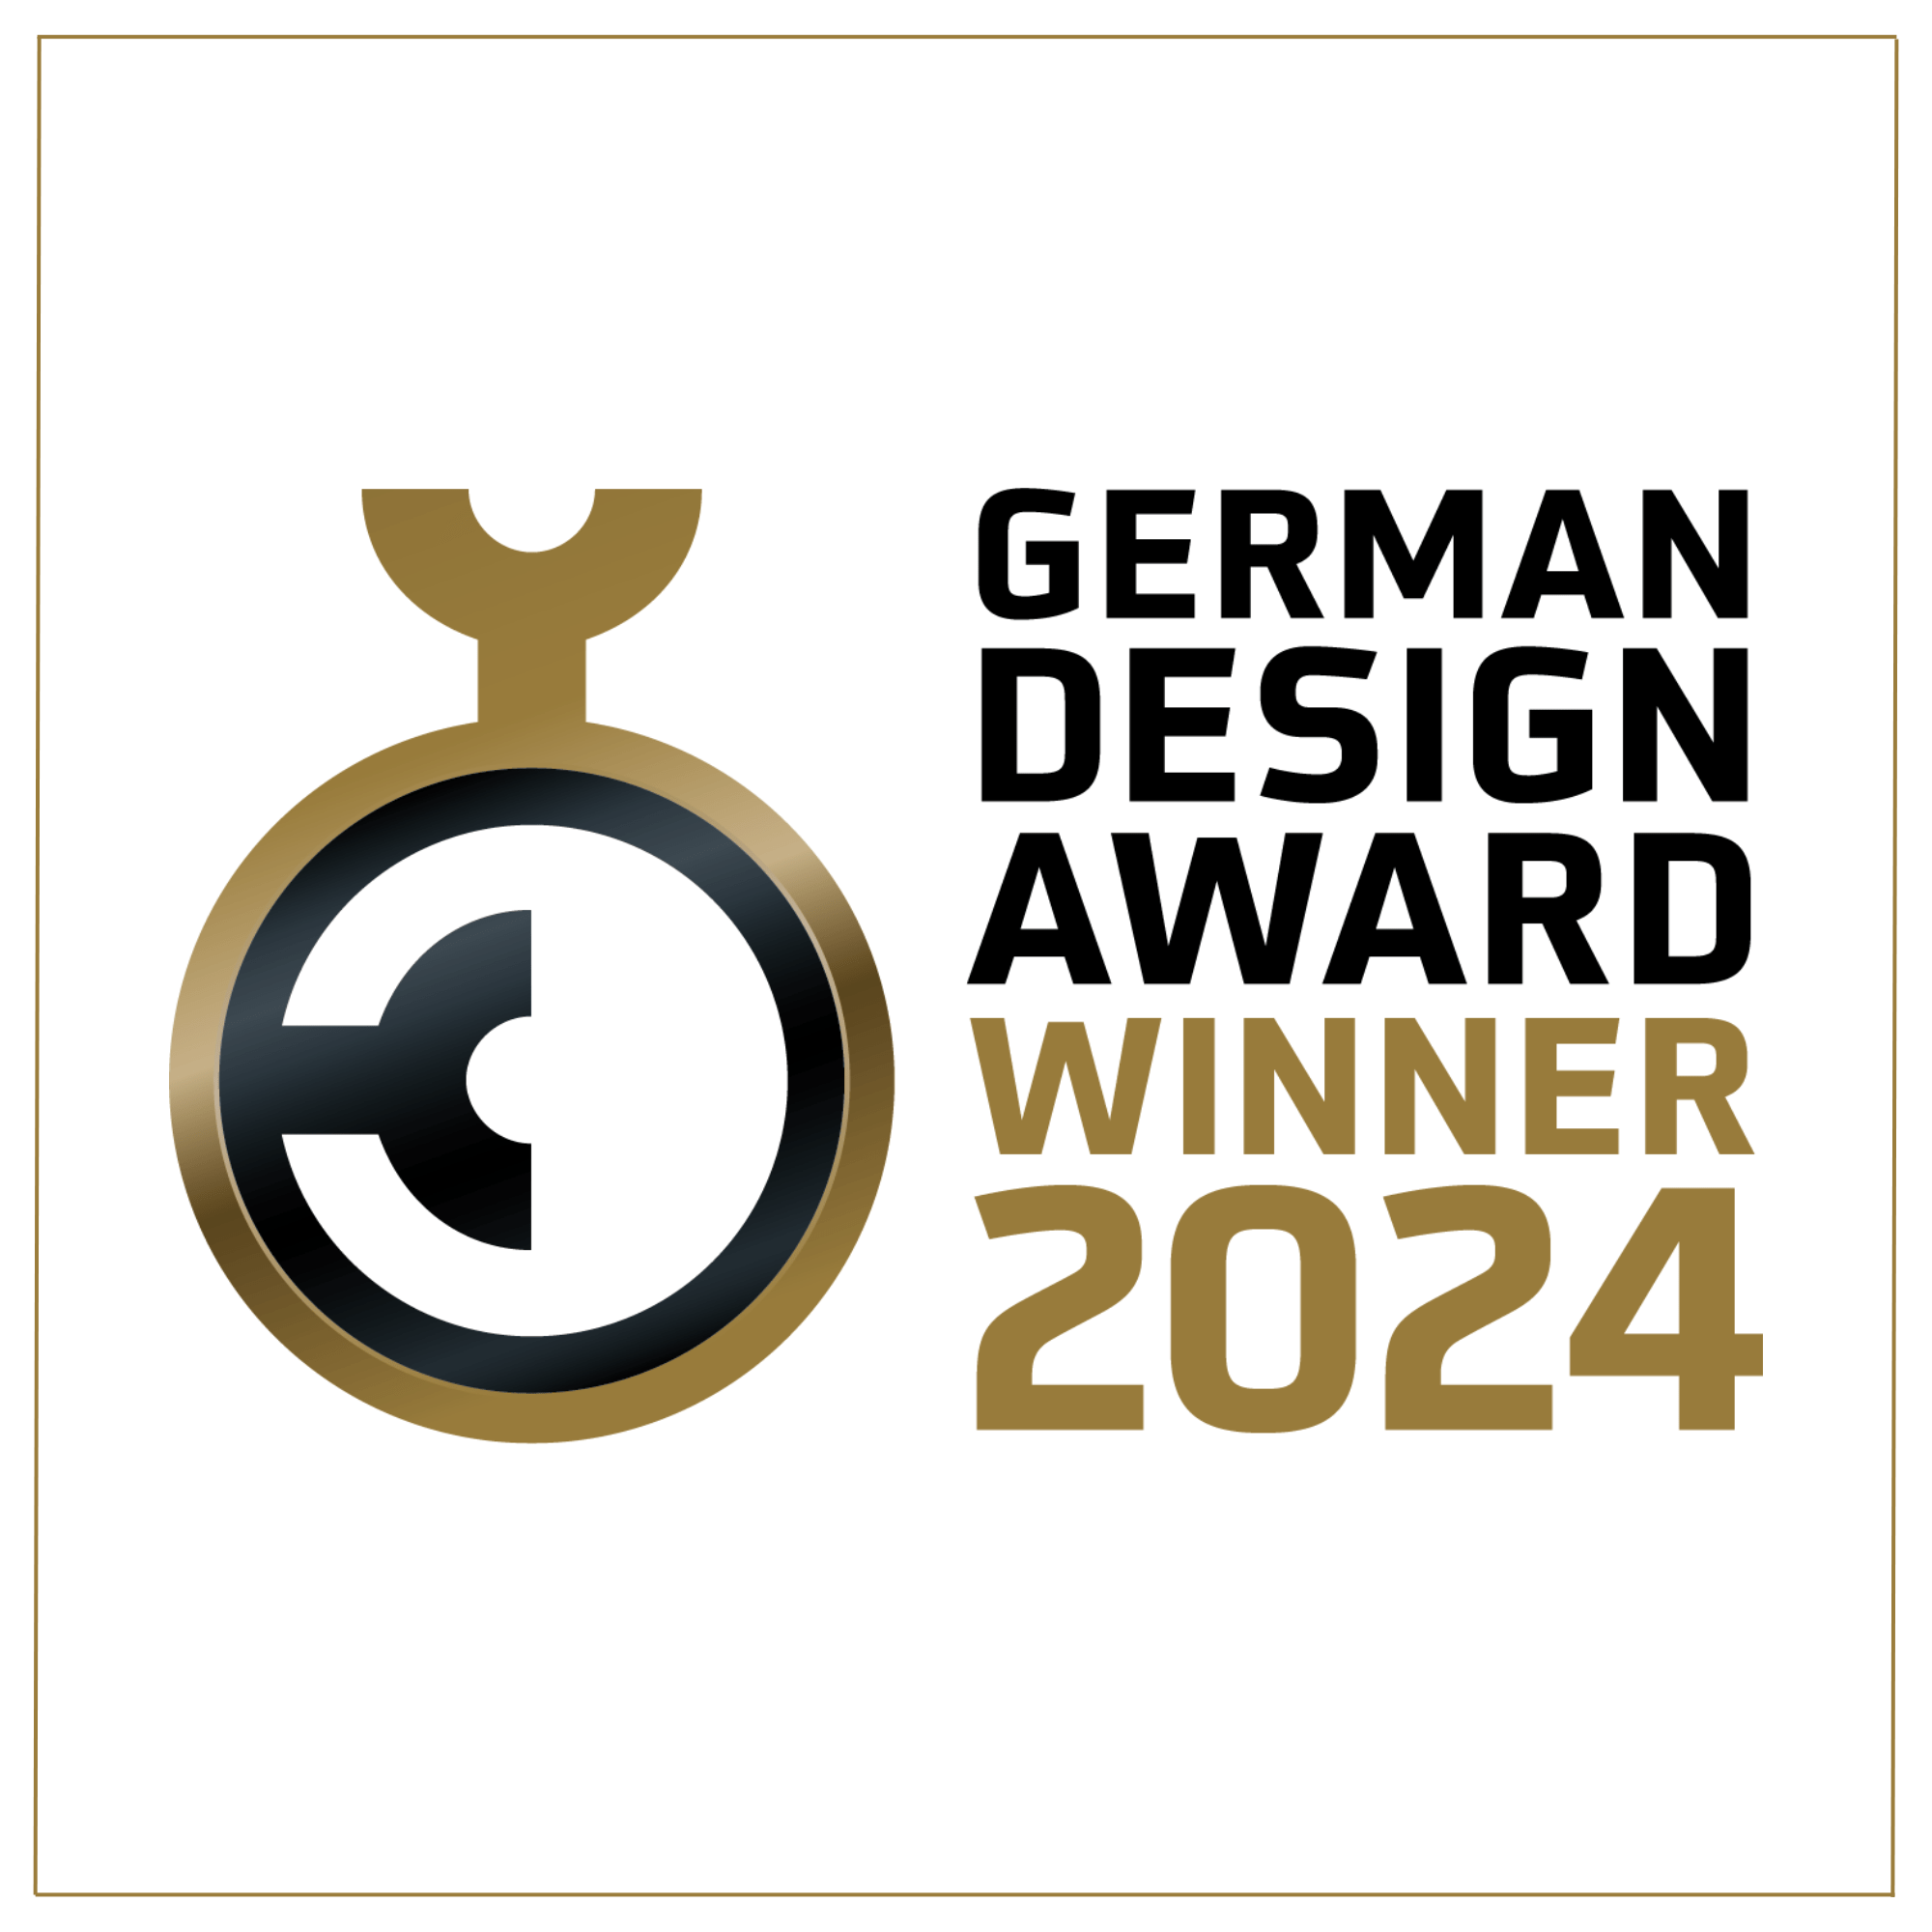 junikind ist mit dem German Design Award 2024 ausgezeichnet